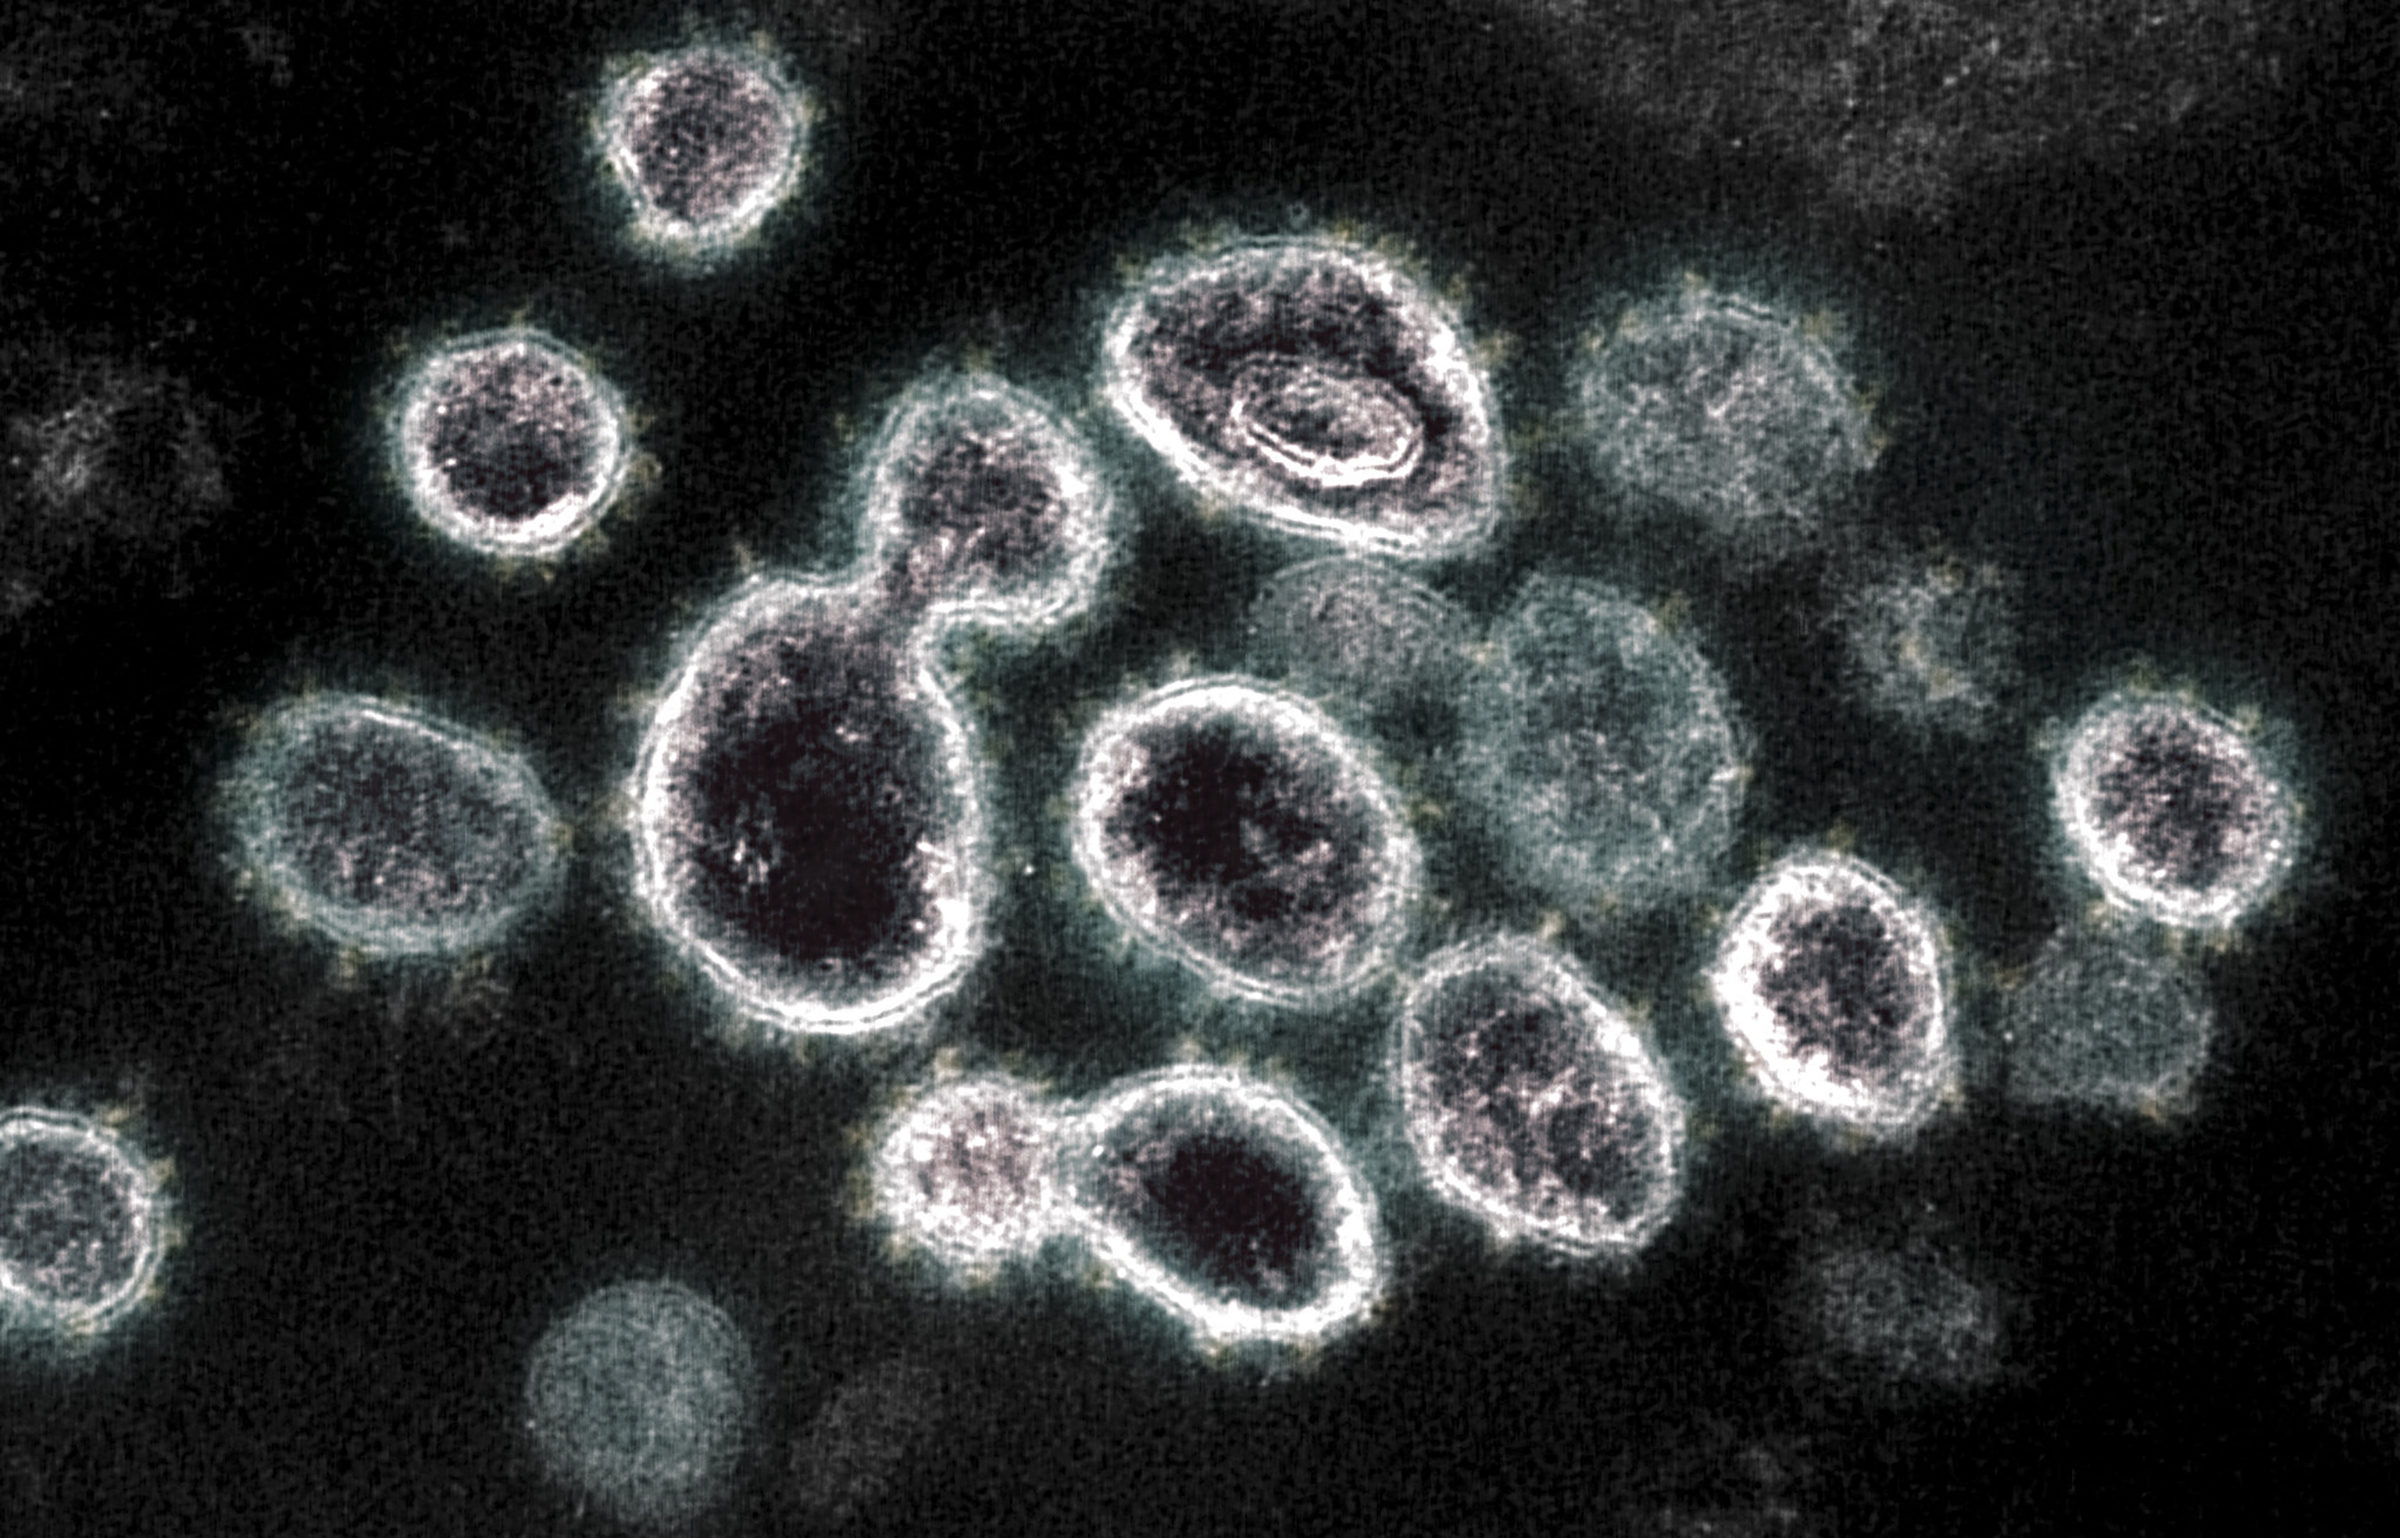 Megfertőzött sejtekből előbukkanó koronavírusok elektronmikroszkóp alatt.